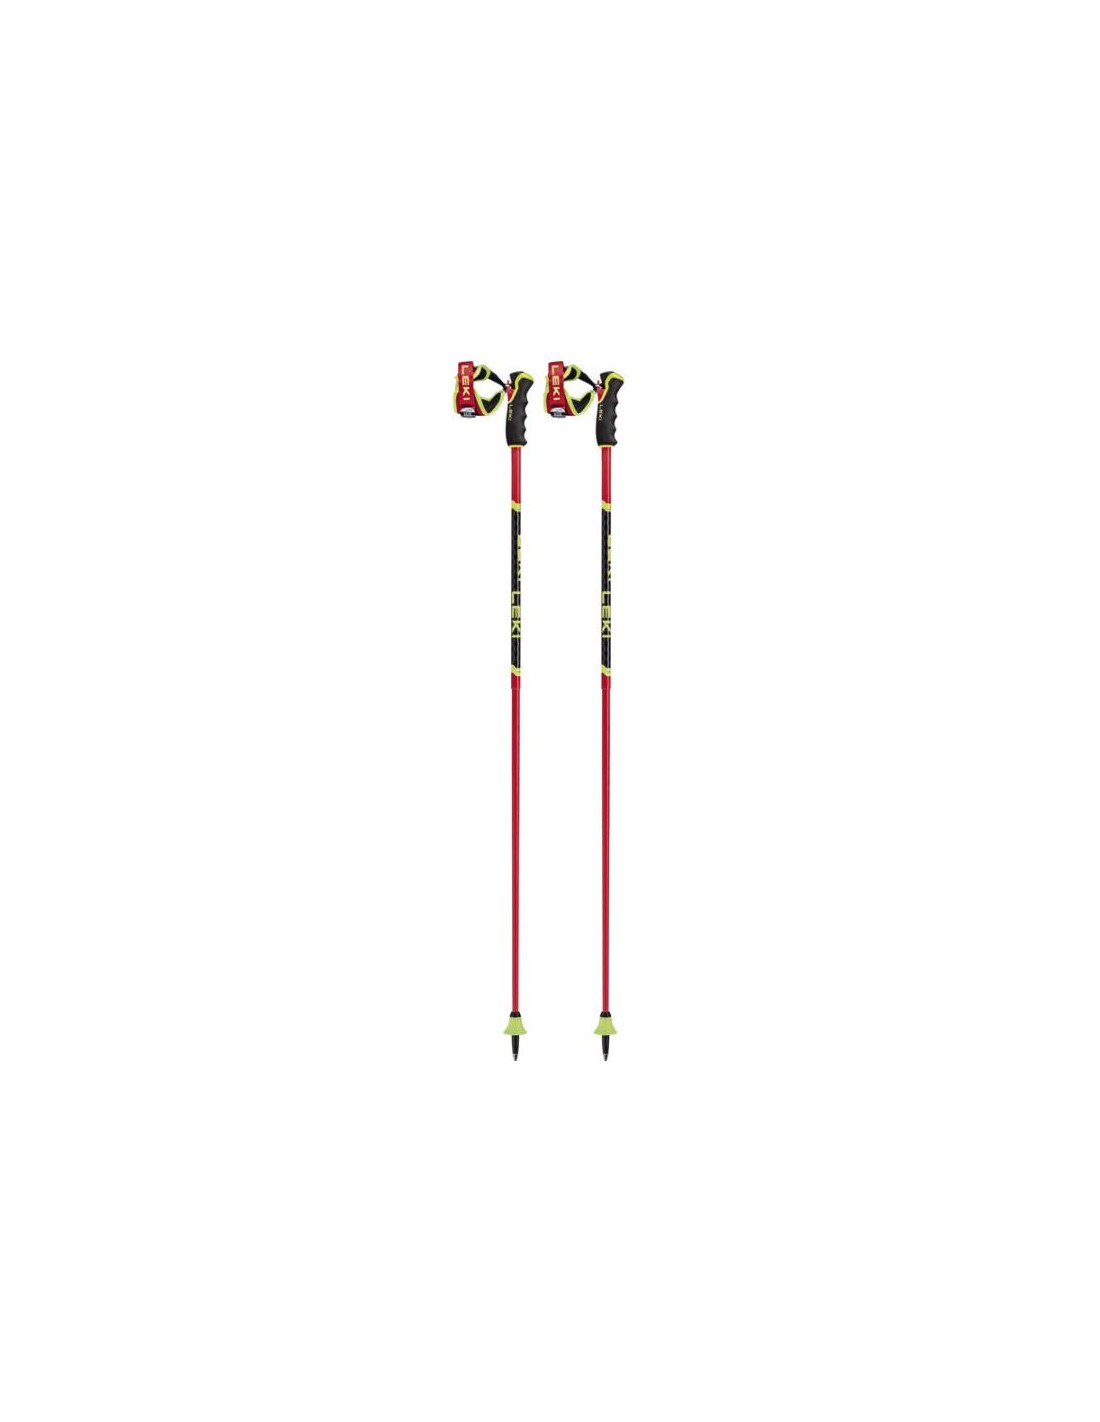 Leki VENOM GS 3D, bright red-black-neonyellow Skistocklänge - 115 cm, Anwendungsbereich - RSL (Riesenslalom), Skistockmaterial - Alu + Carbon, von Leki